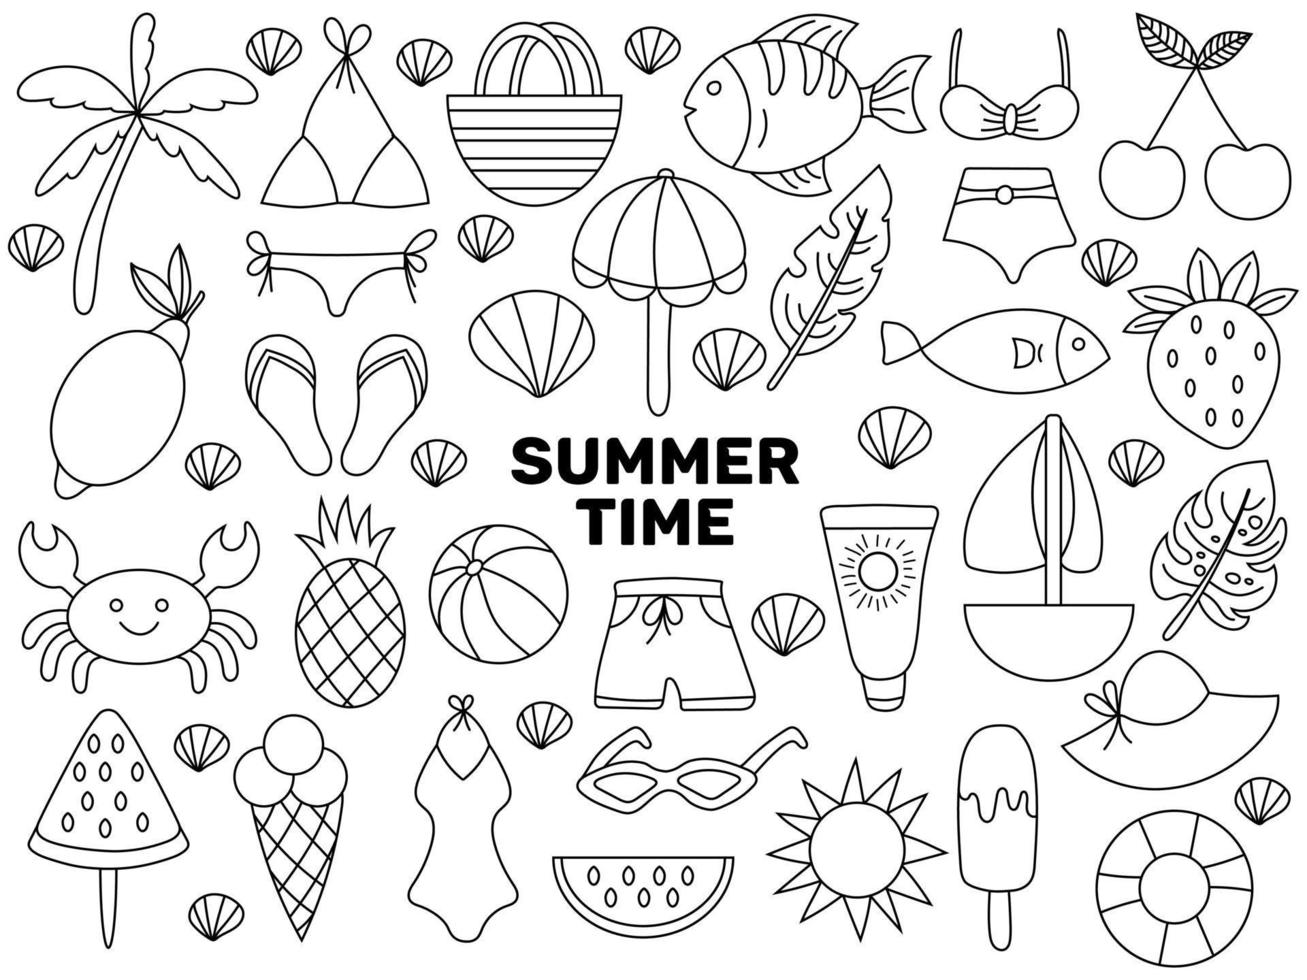 grote set van verschillende zomer items in zwart-wit doodle stijl geïsoleerd op een witte achtergrond. vectorkrabbelillustratie. vector